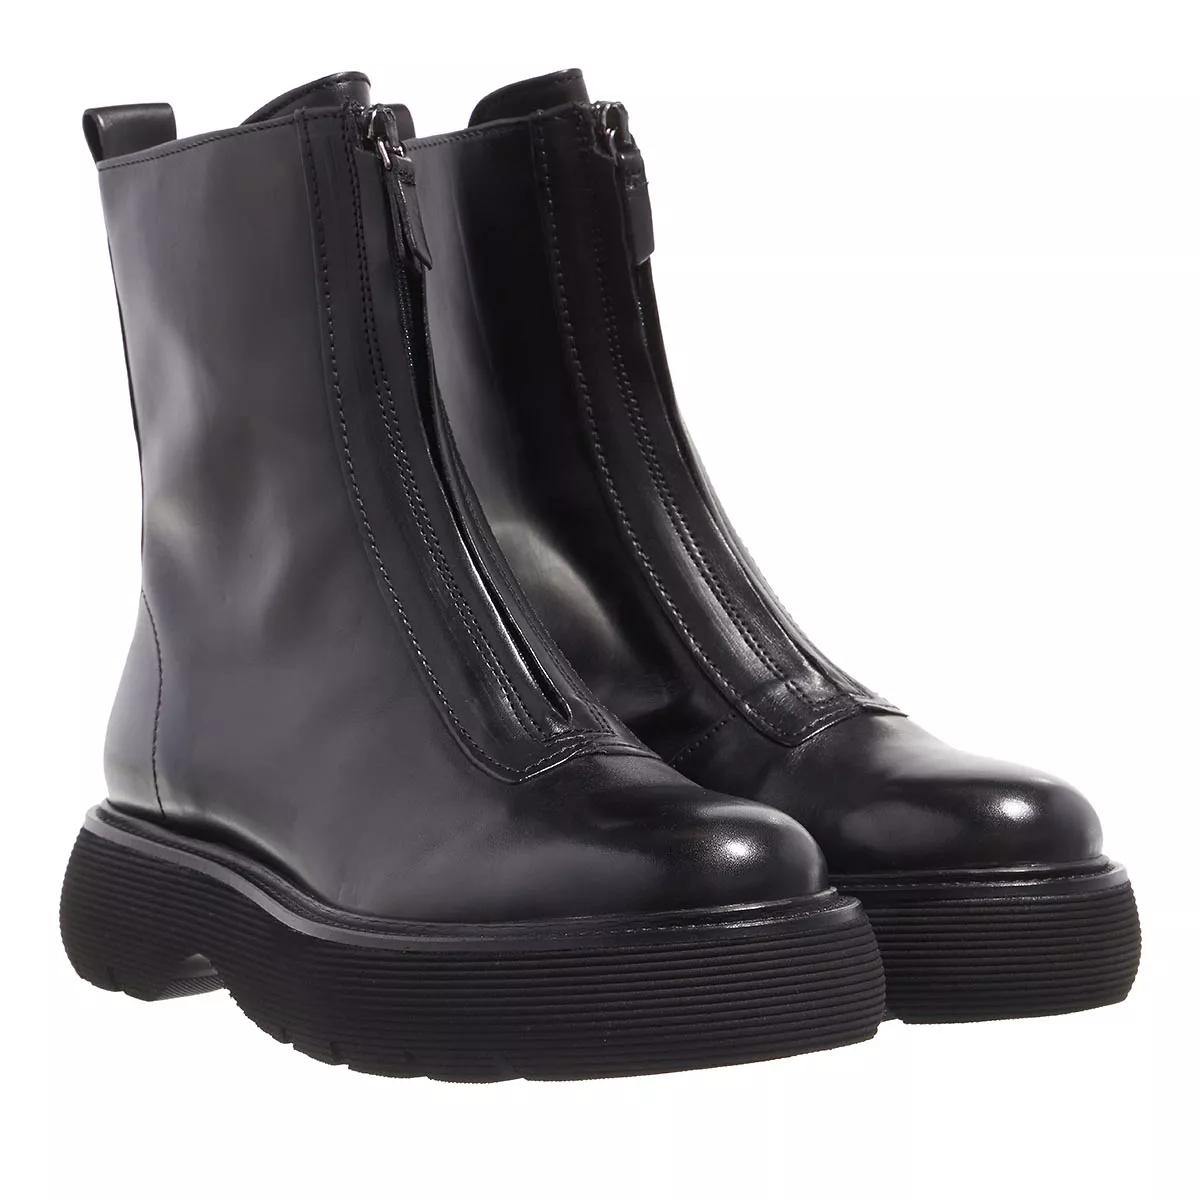 Kennel & Schmenger Boots & Stiefeletten - Dash Boots Leather - Gr. 36 (EU) - in Schwarz - für Damen von Kennel & Schmenger